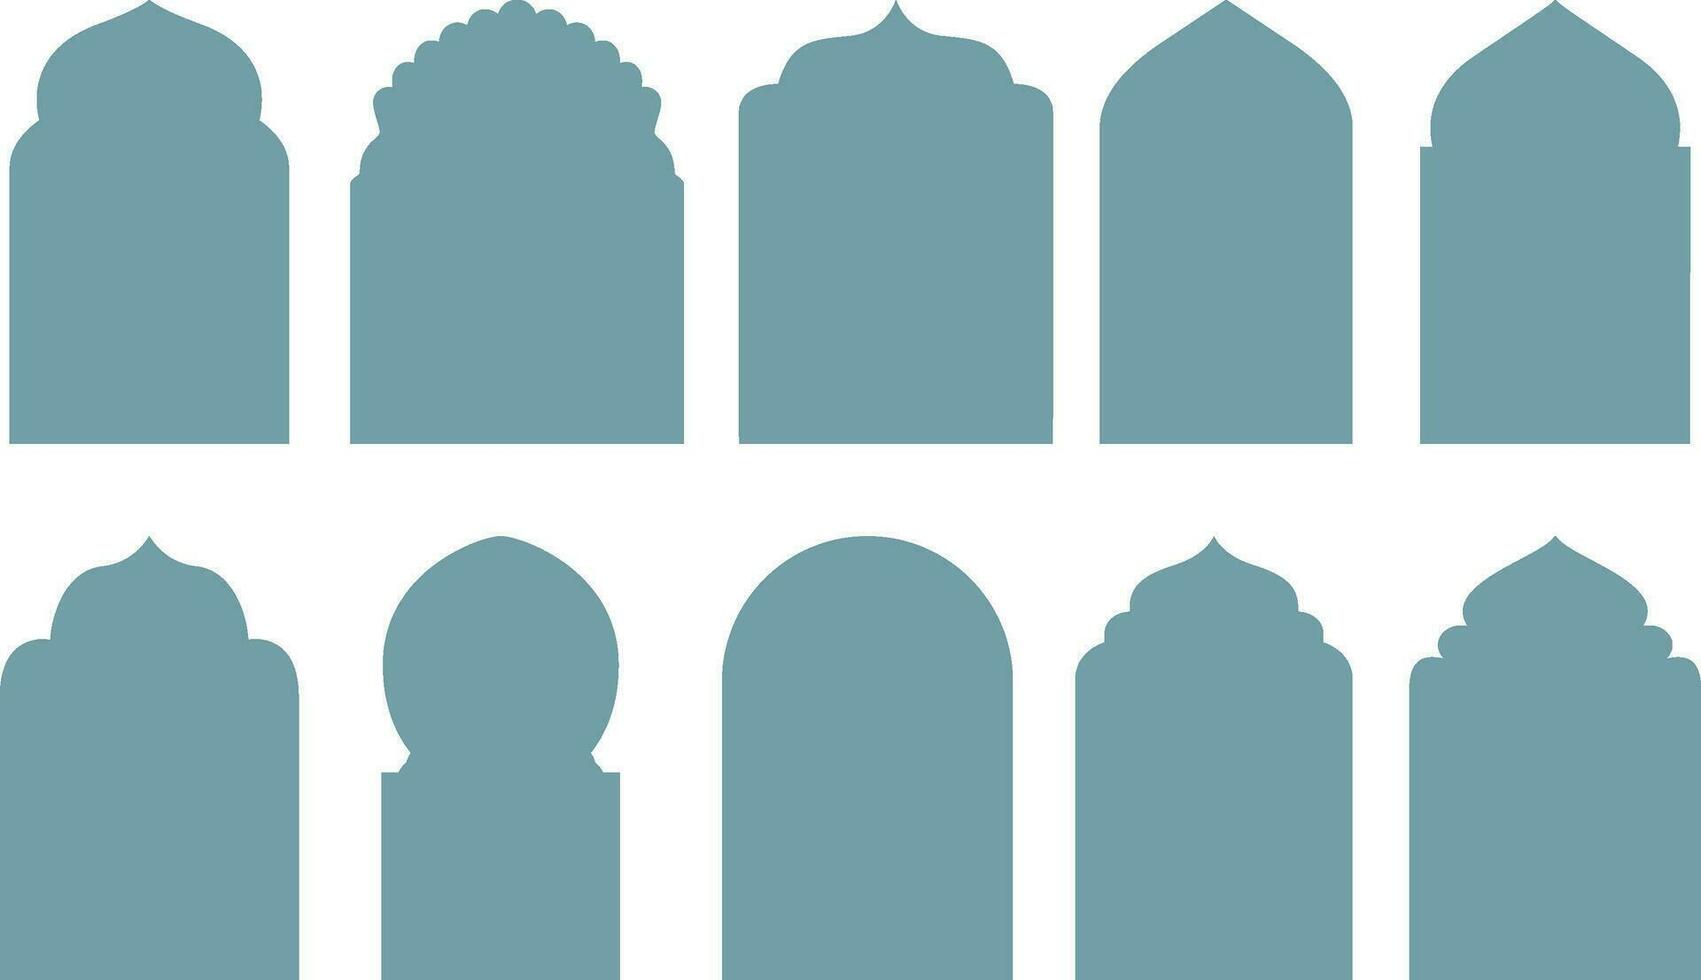 oriental estilo islámico Ramadán kareem ventanas y arcos con moderno estilo diseño. arquitectónico tipo de arcos formas ventana. vector